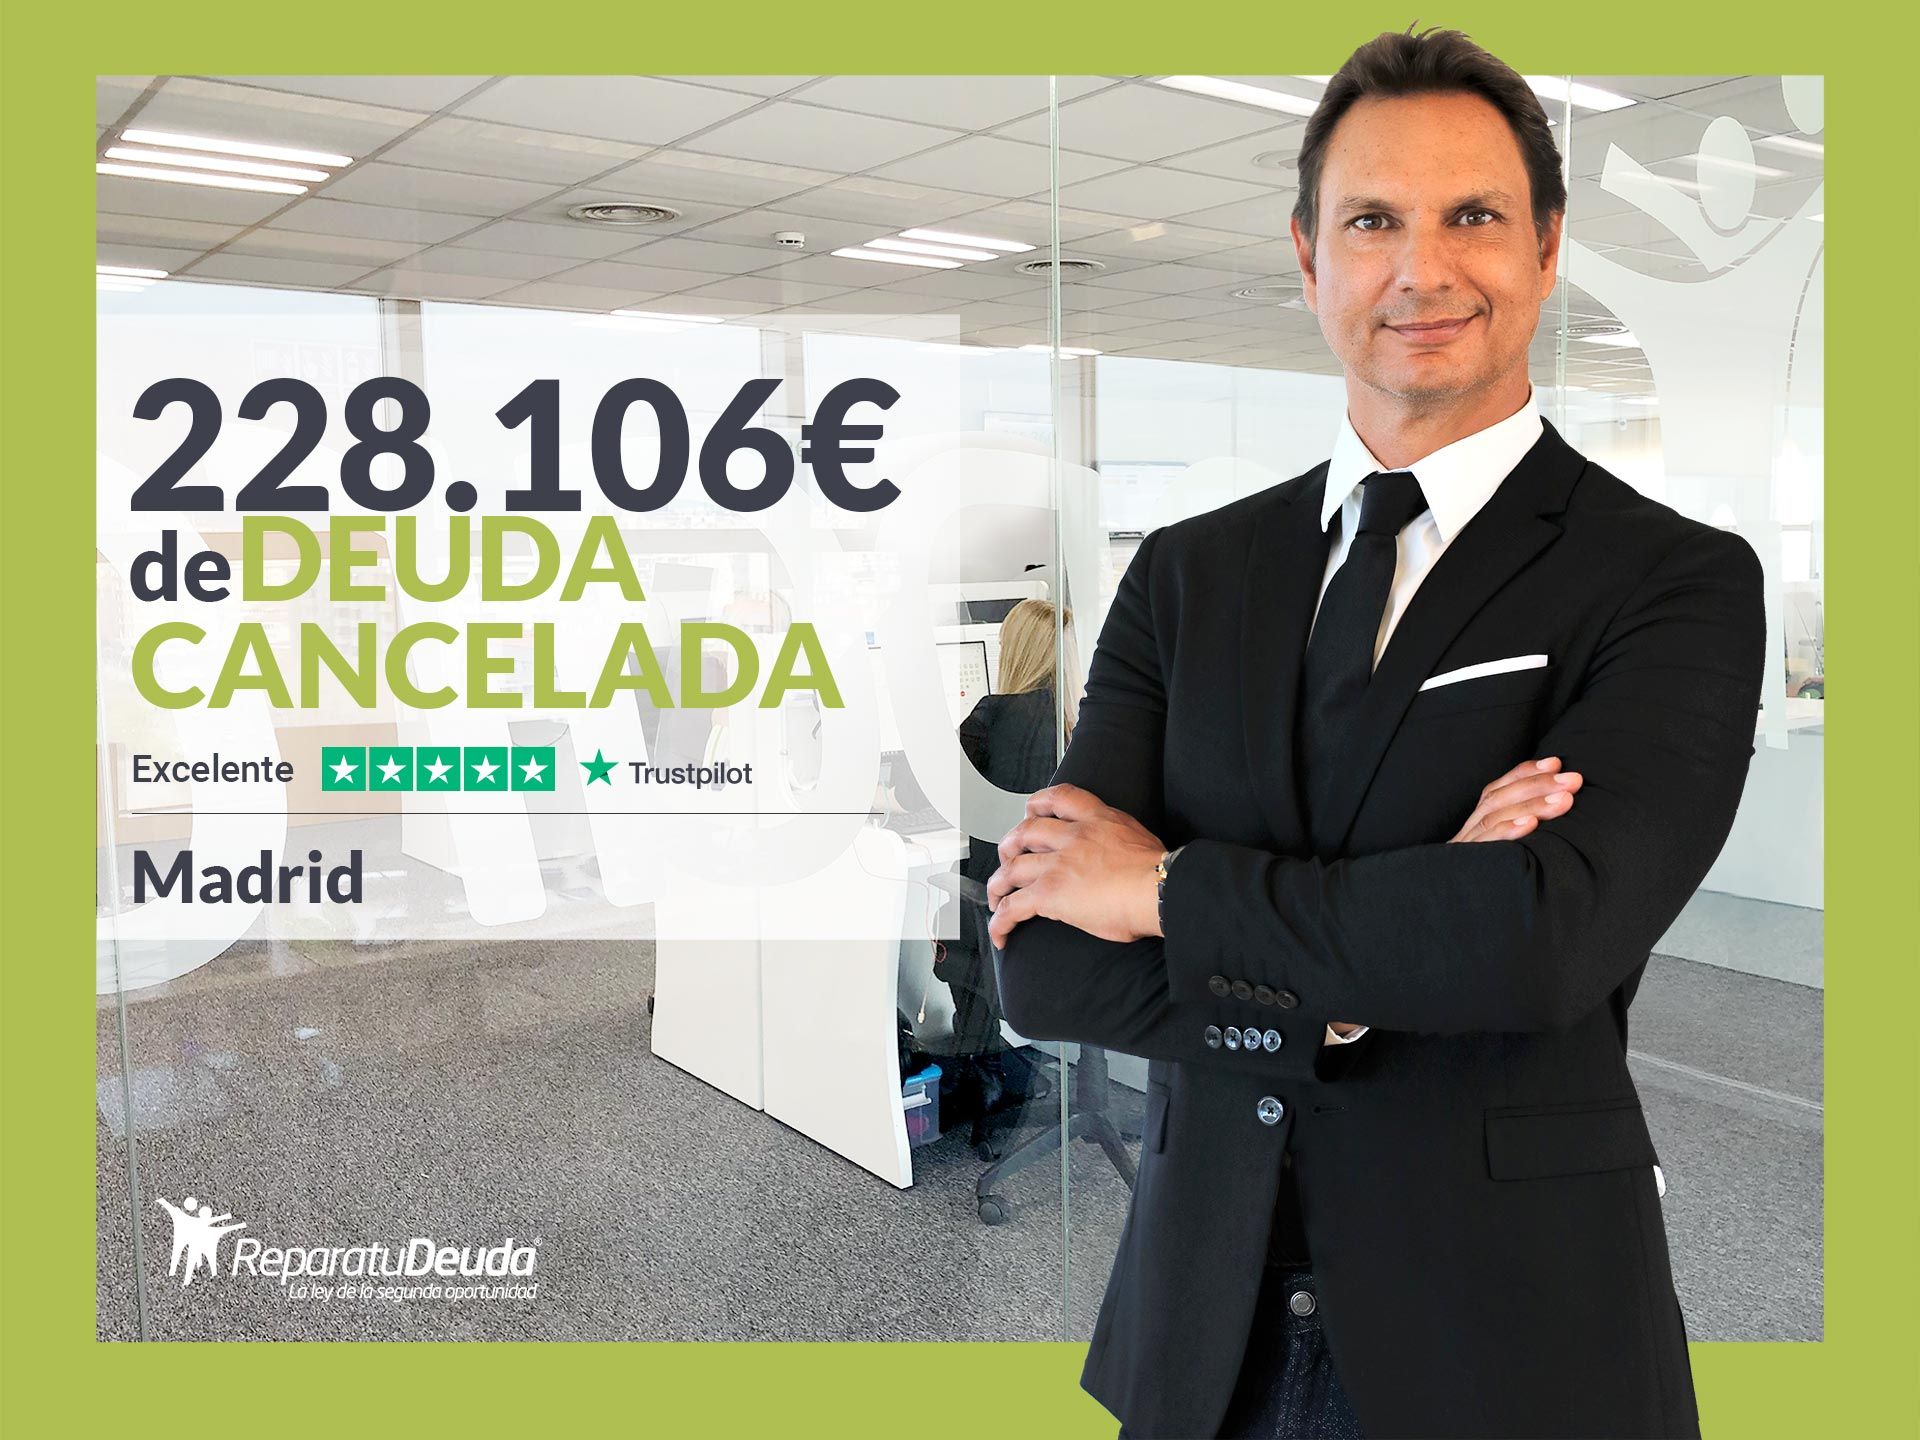 Repara tu Deuda Abogados cancela 228.106? en Madrid con la Ley de Segunda Oportunidad